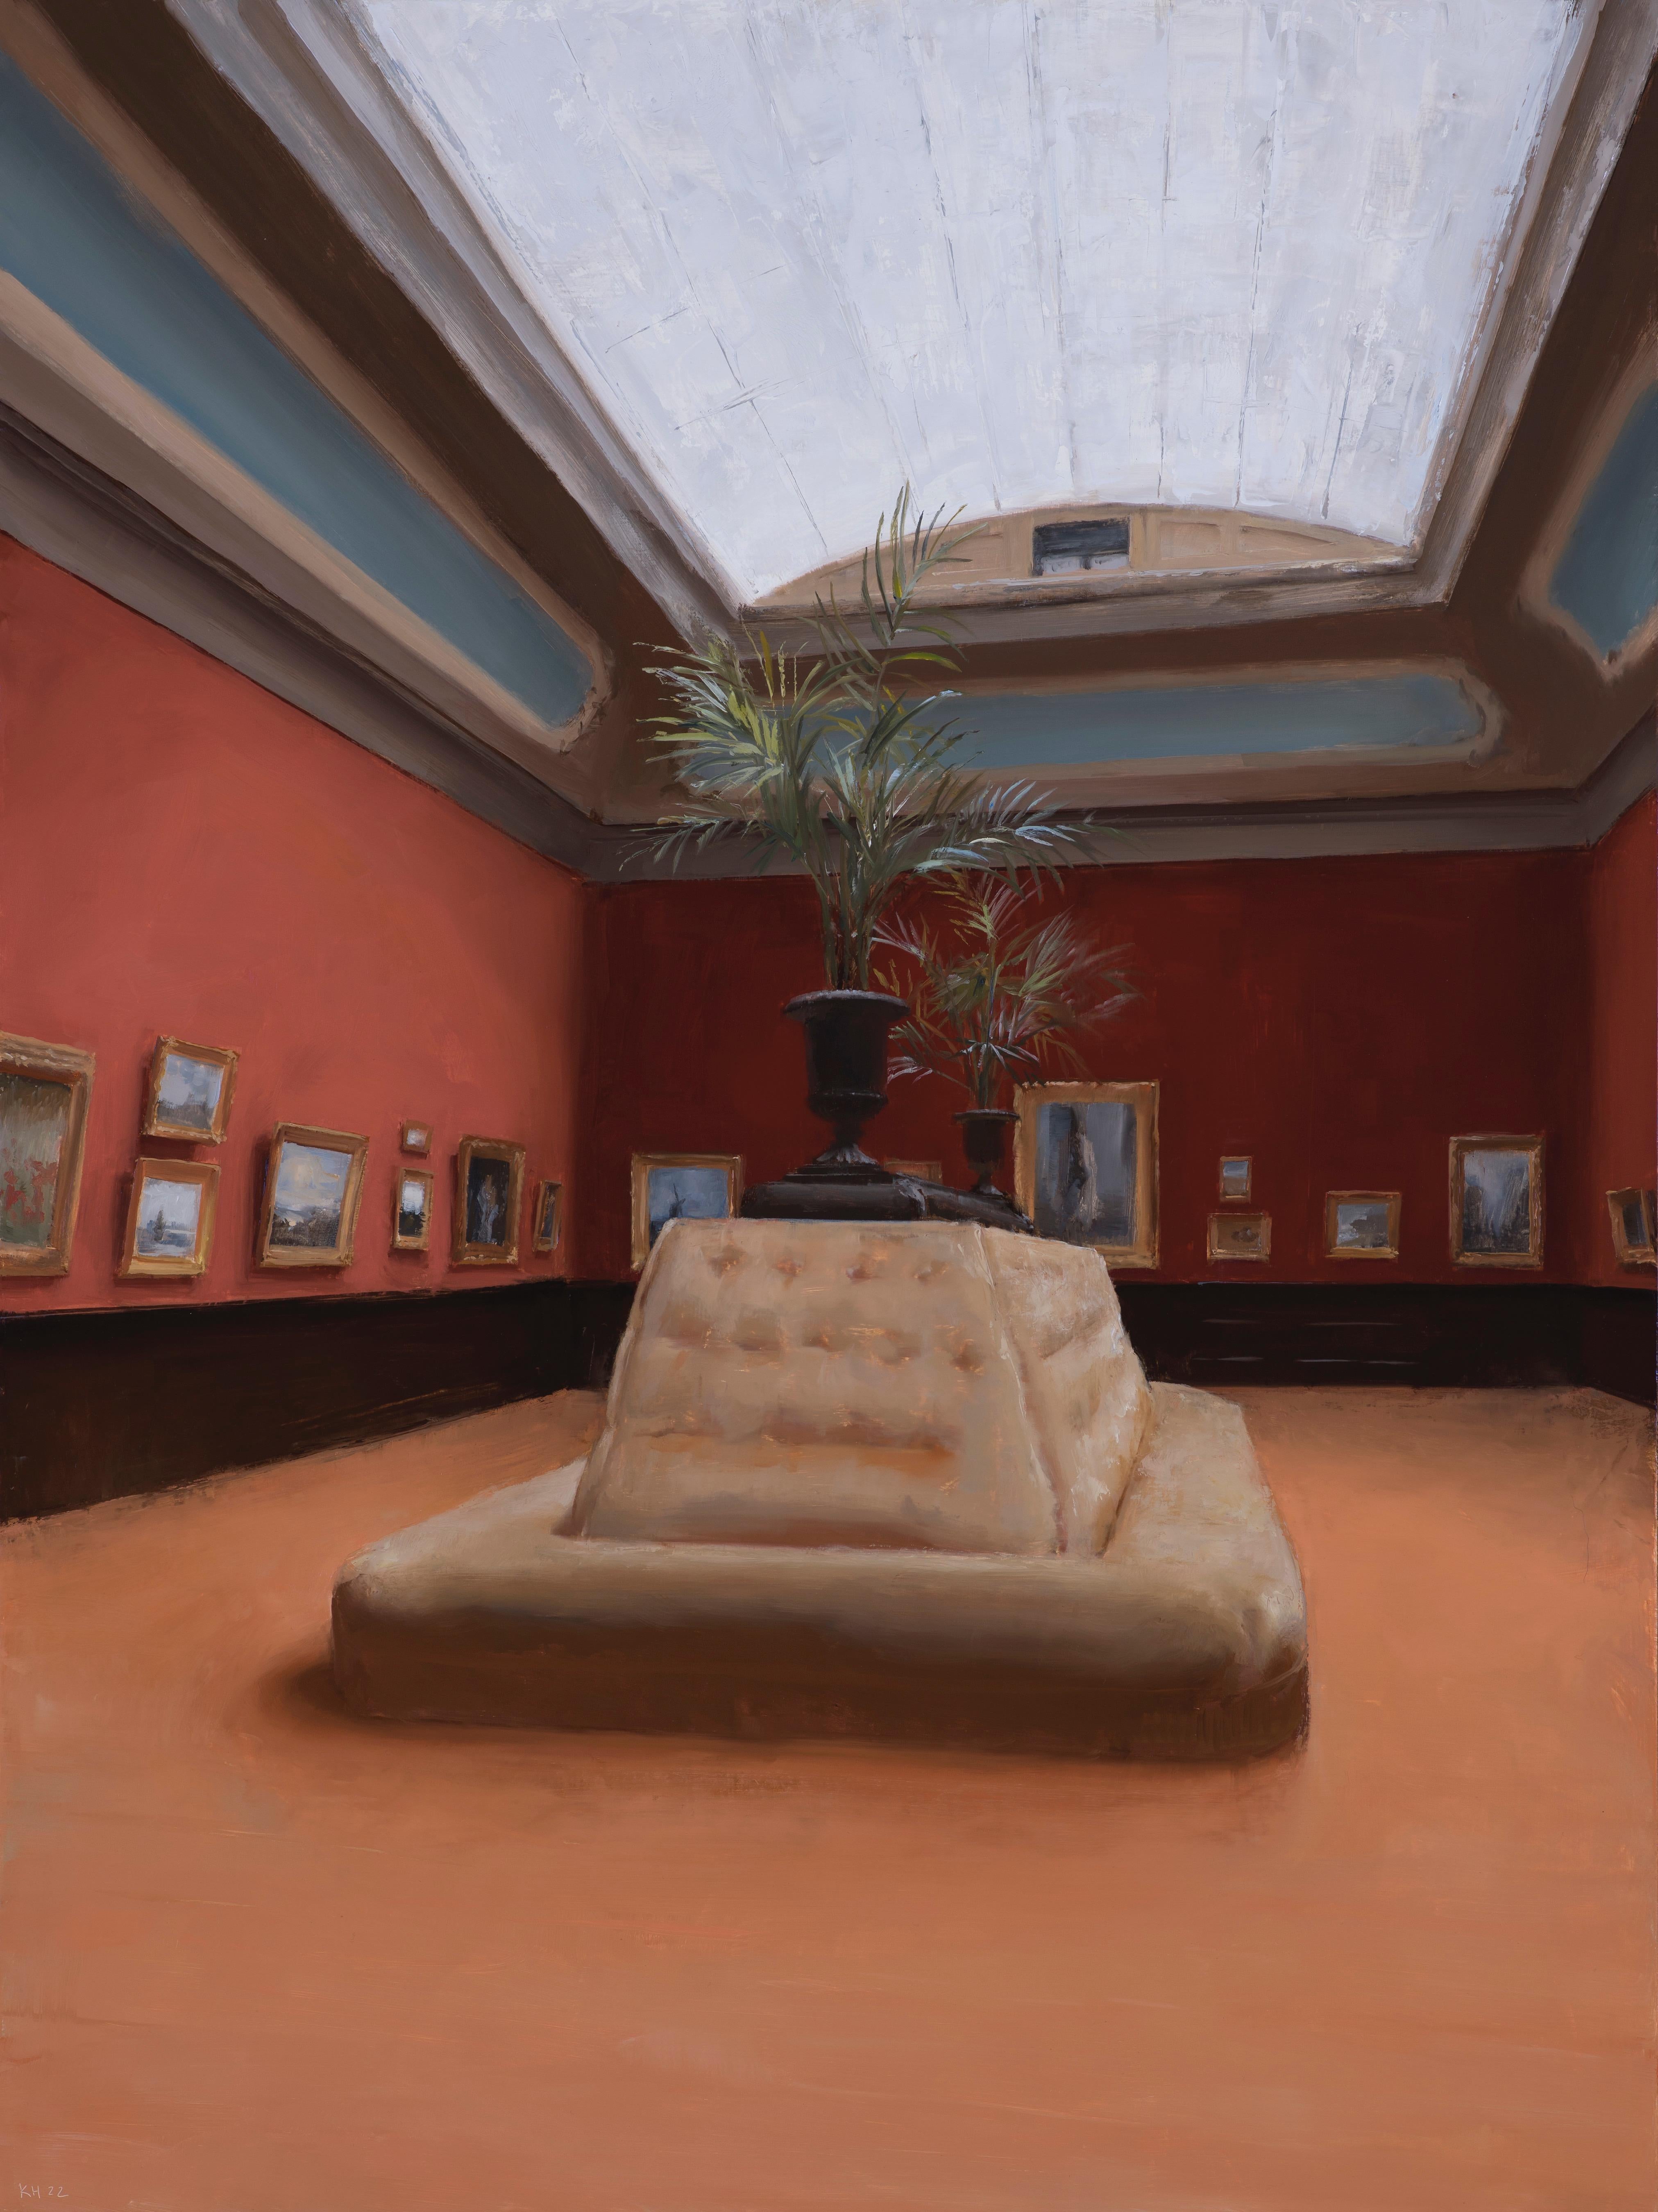 kenny harris Interior Painting - Picture Gallery, TeylersMuseum, Haarlem